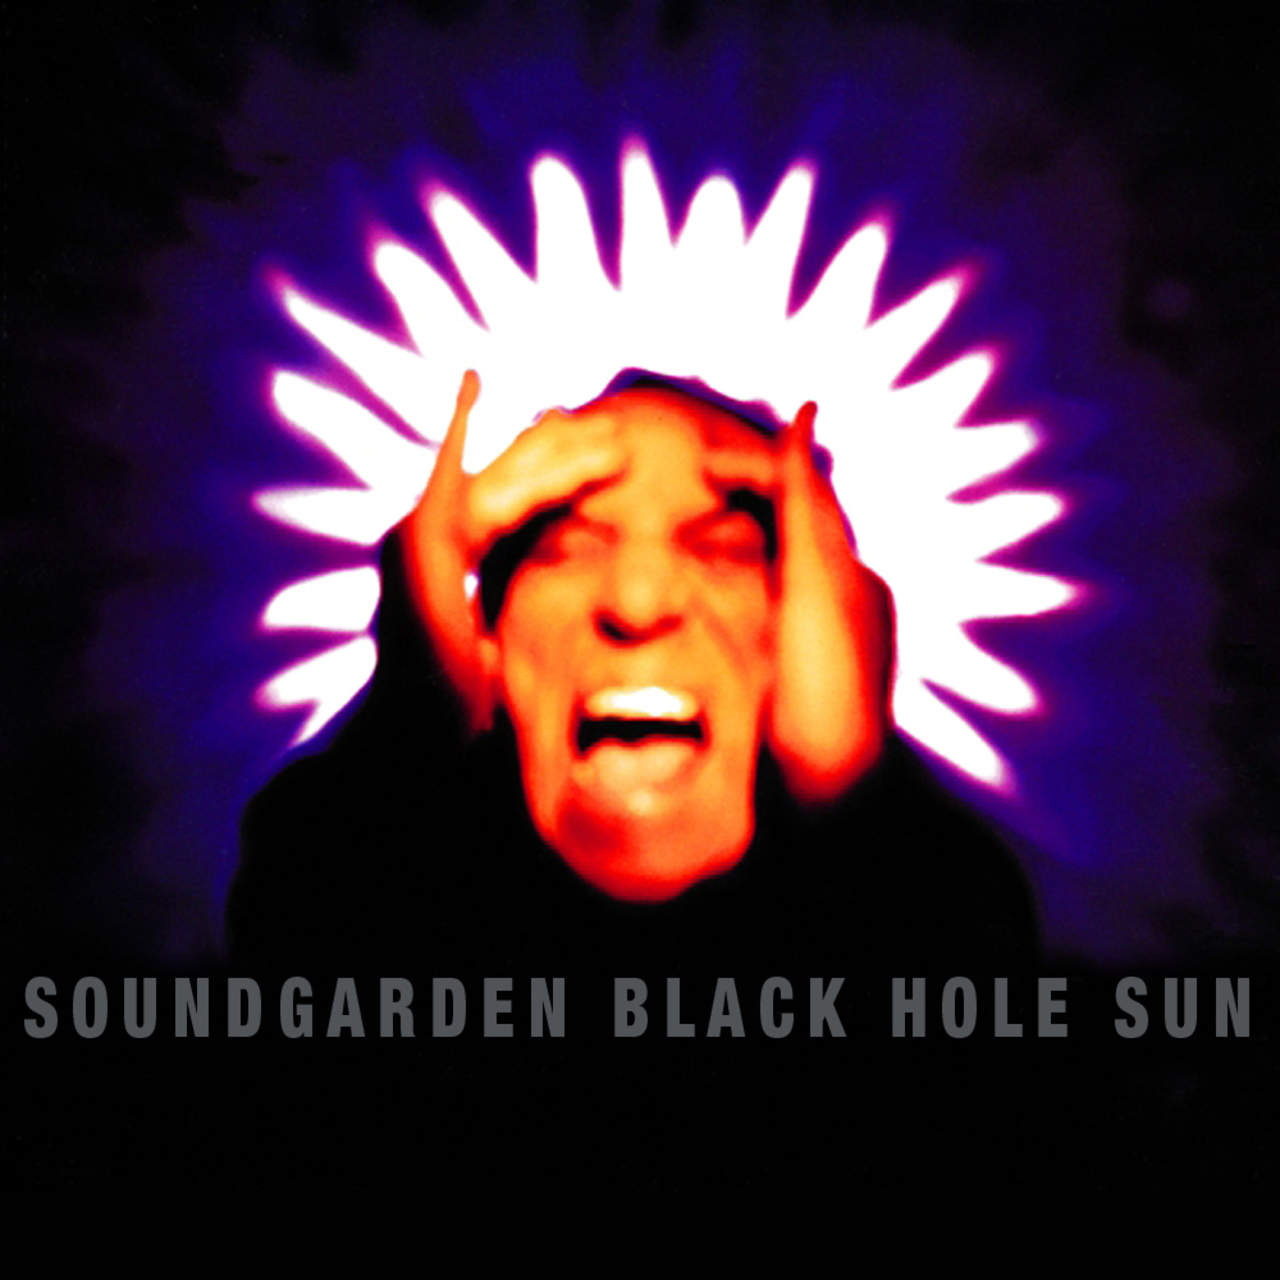 La banda ganó un Grammy por el tema Black Hole Sun. (ARCHIVO)